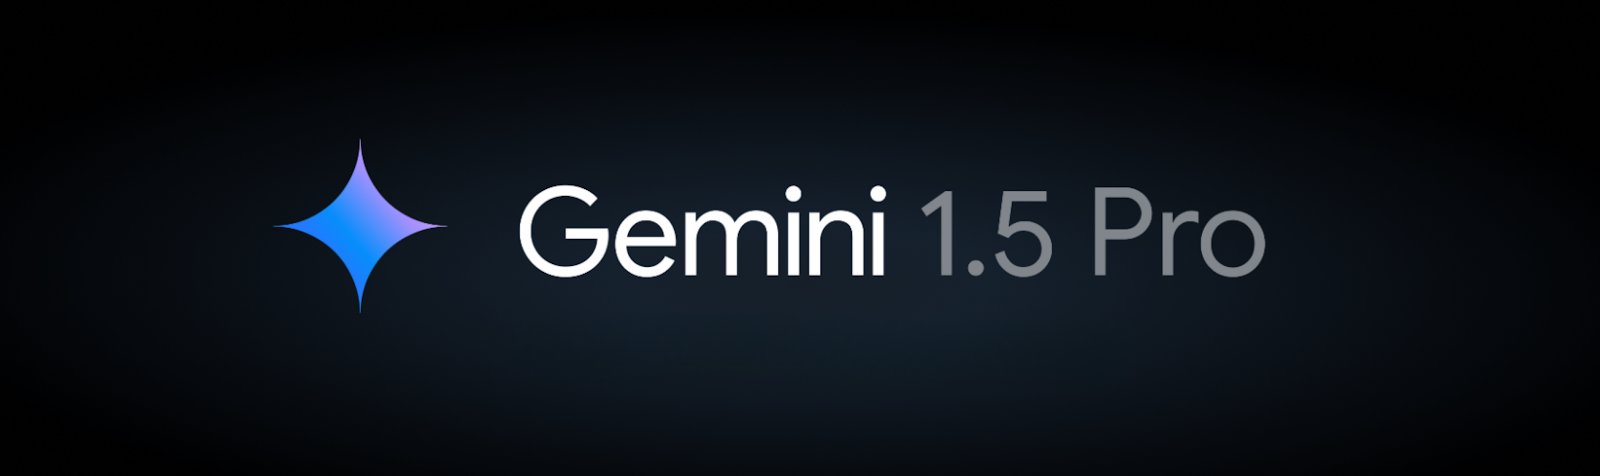 Gemini-banner.png